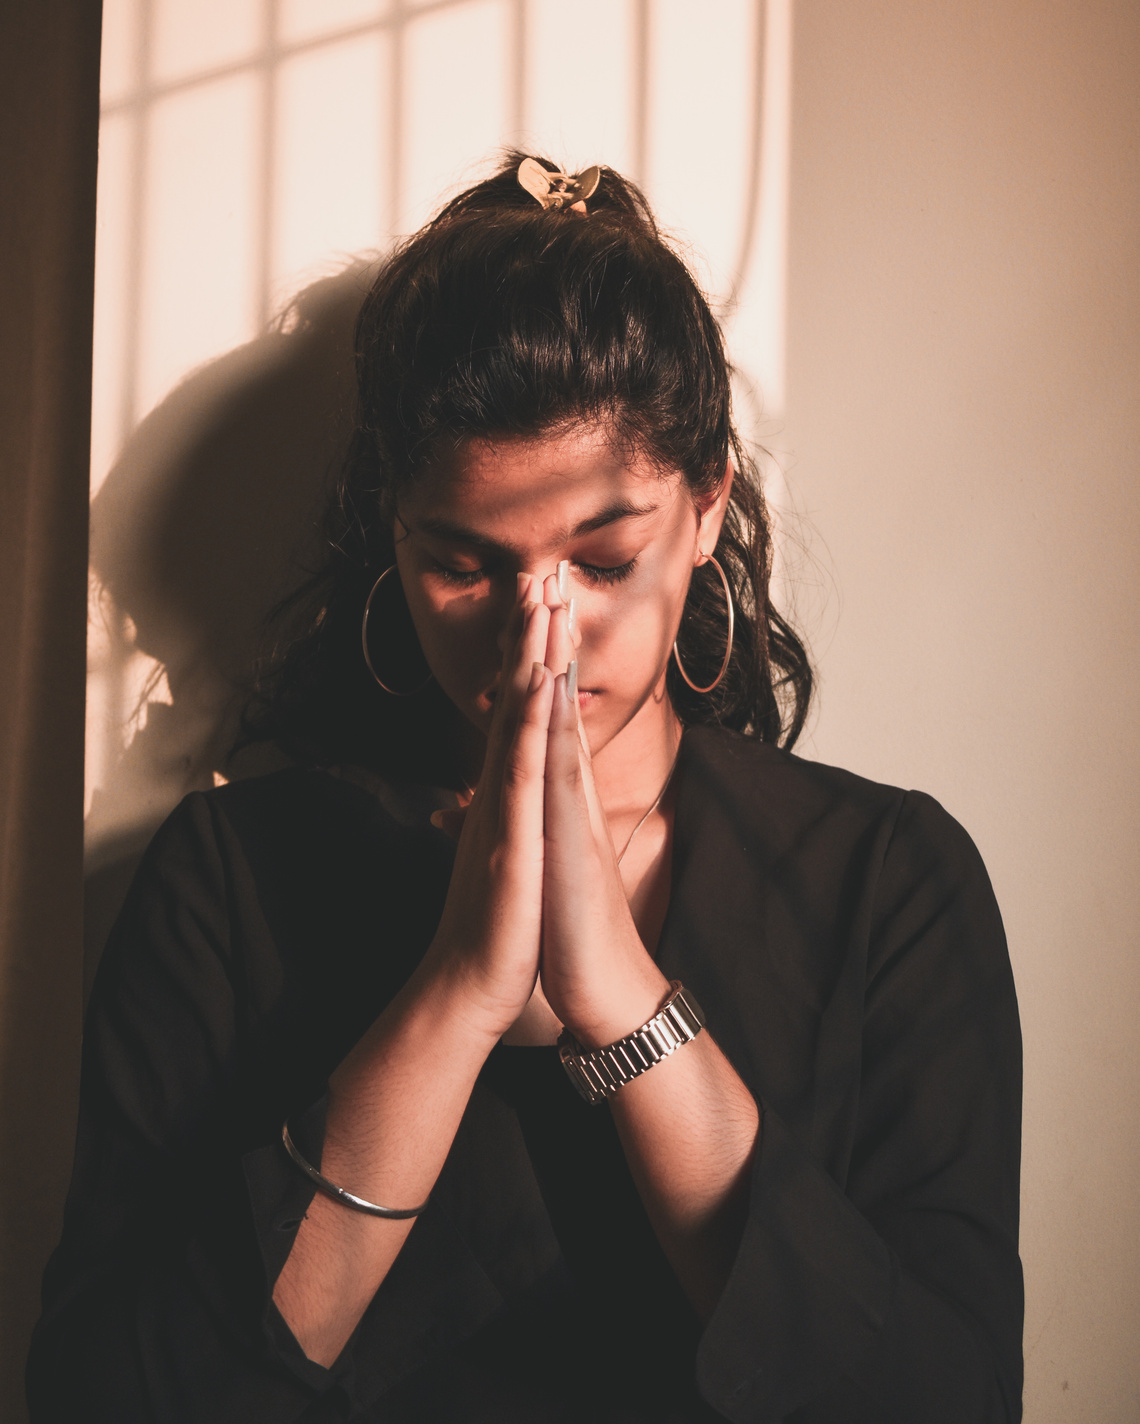 Photo Of Woman Praying